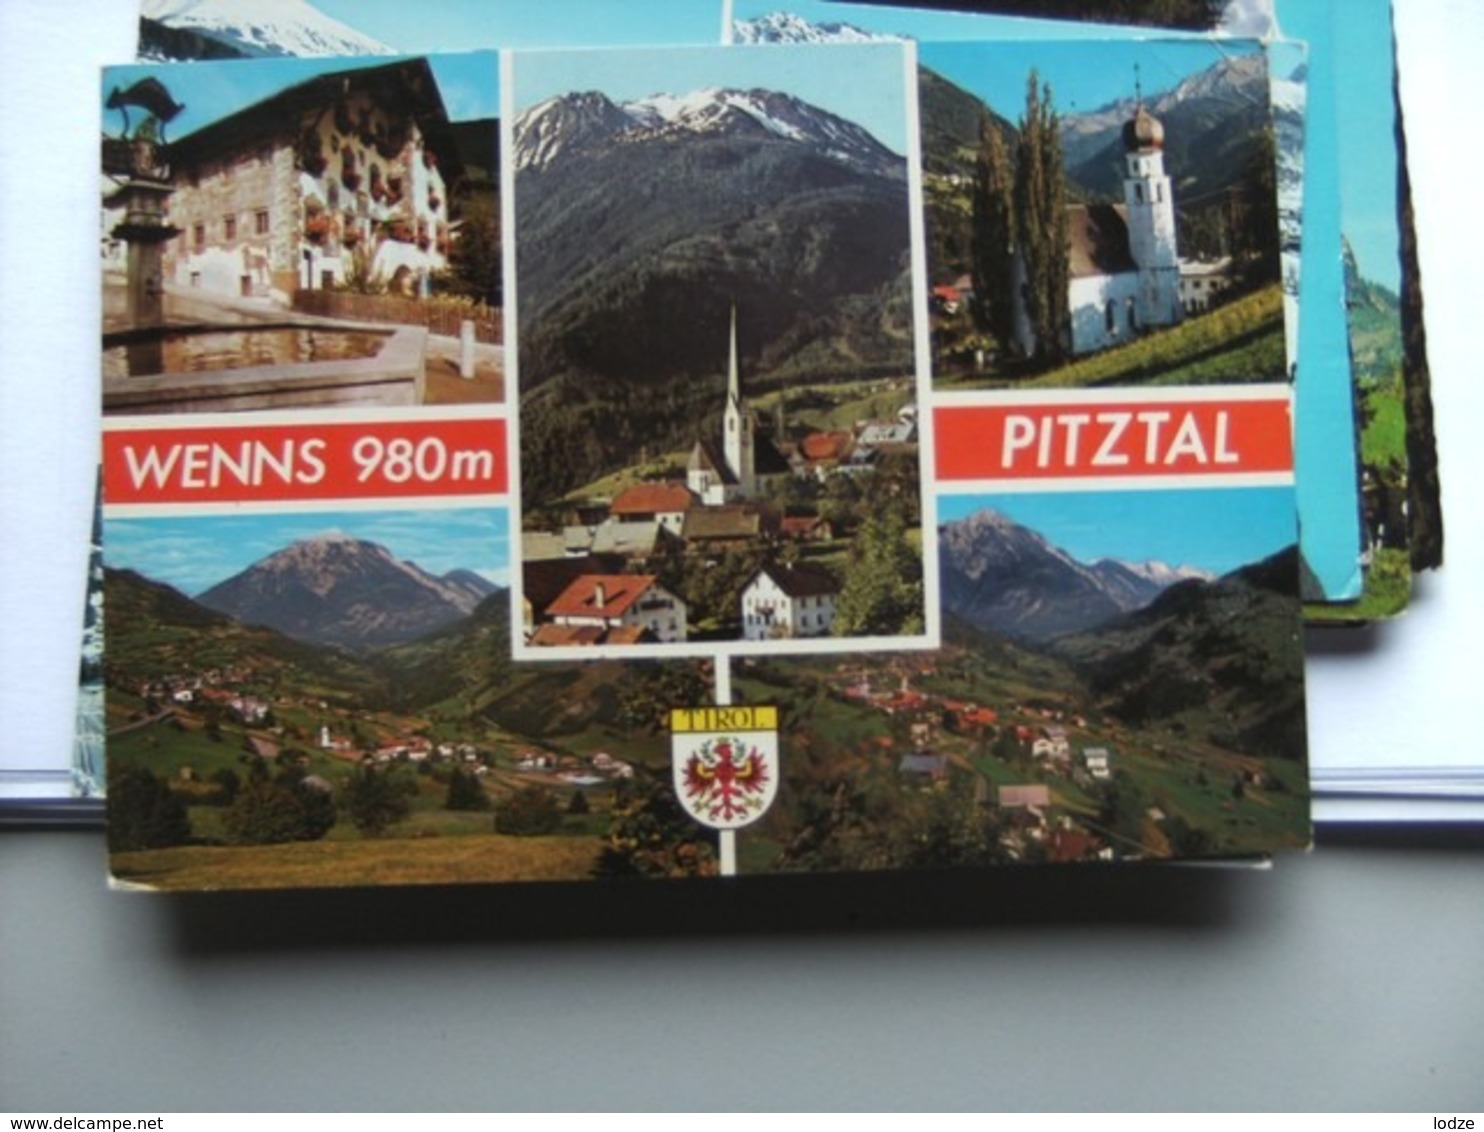 Oostenrijk Österreich Tirol Pitztal Wenns 980m - Pitztal